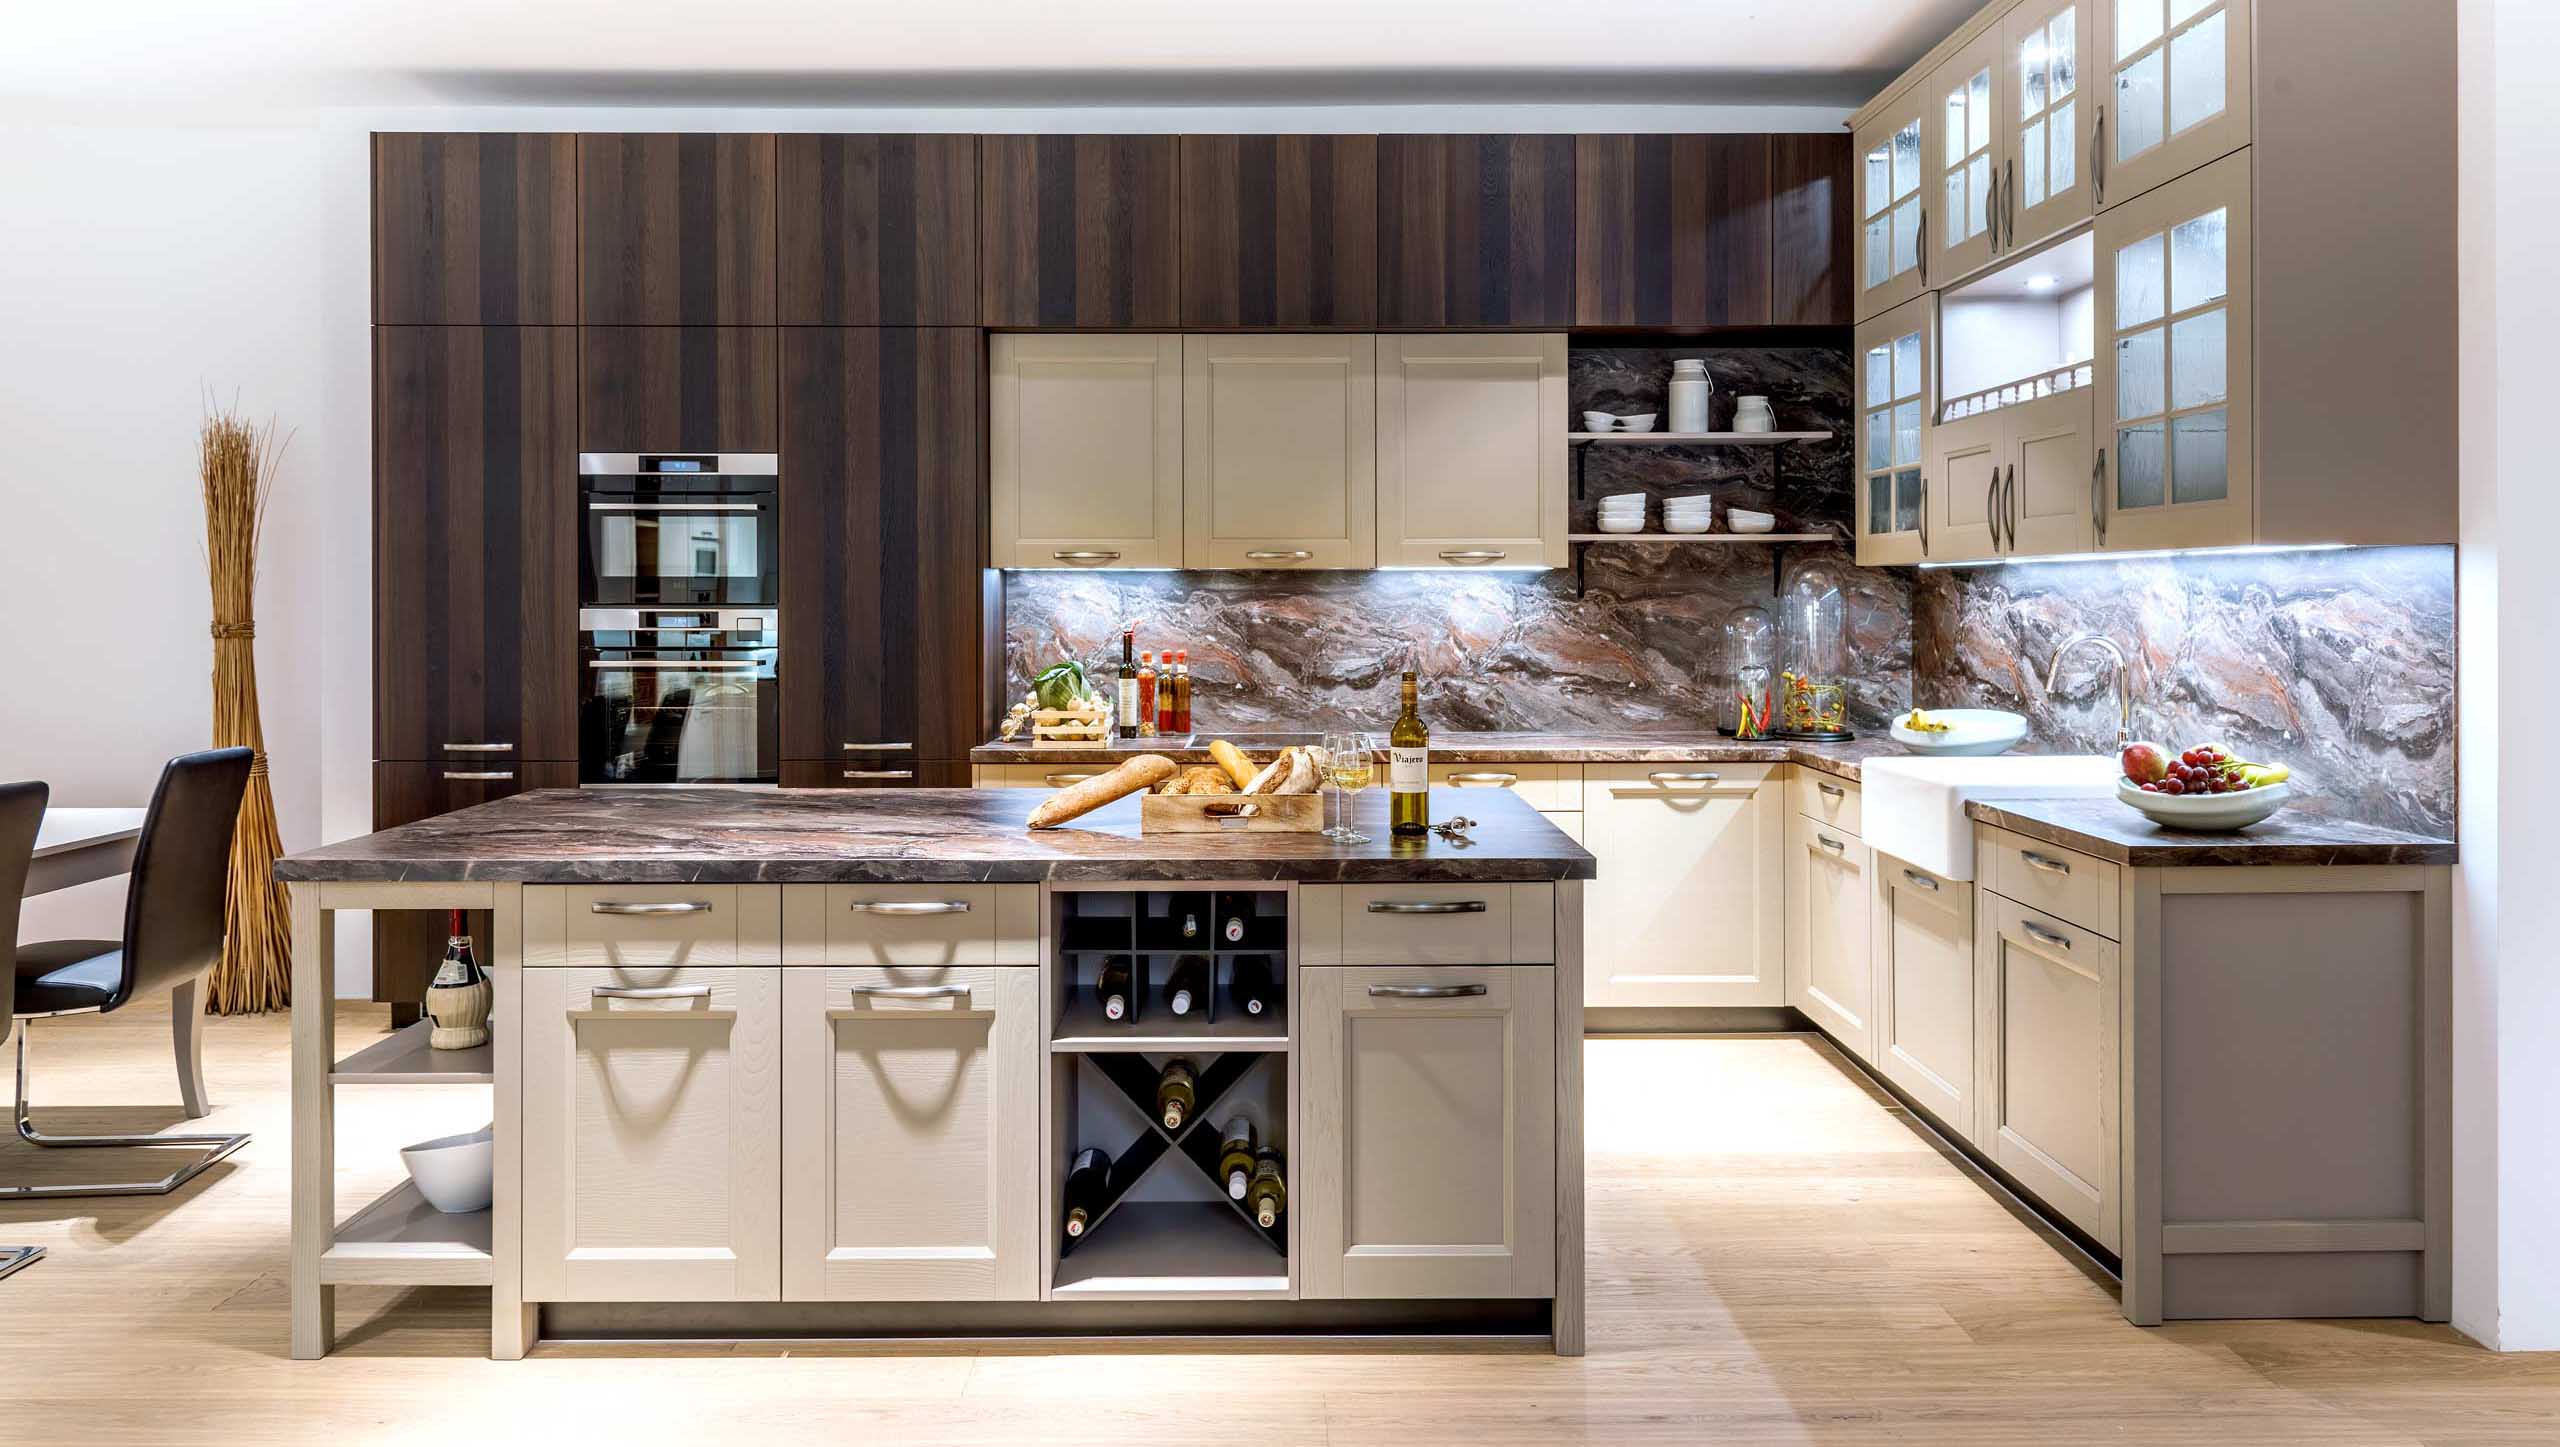 Кухня Импрезо коричневого цвета с современной фурнитурой на три отдельные секции 